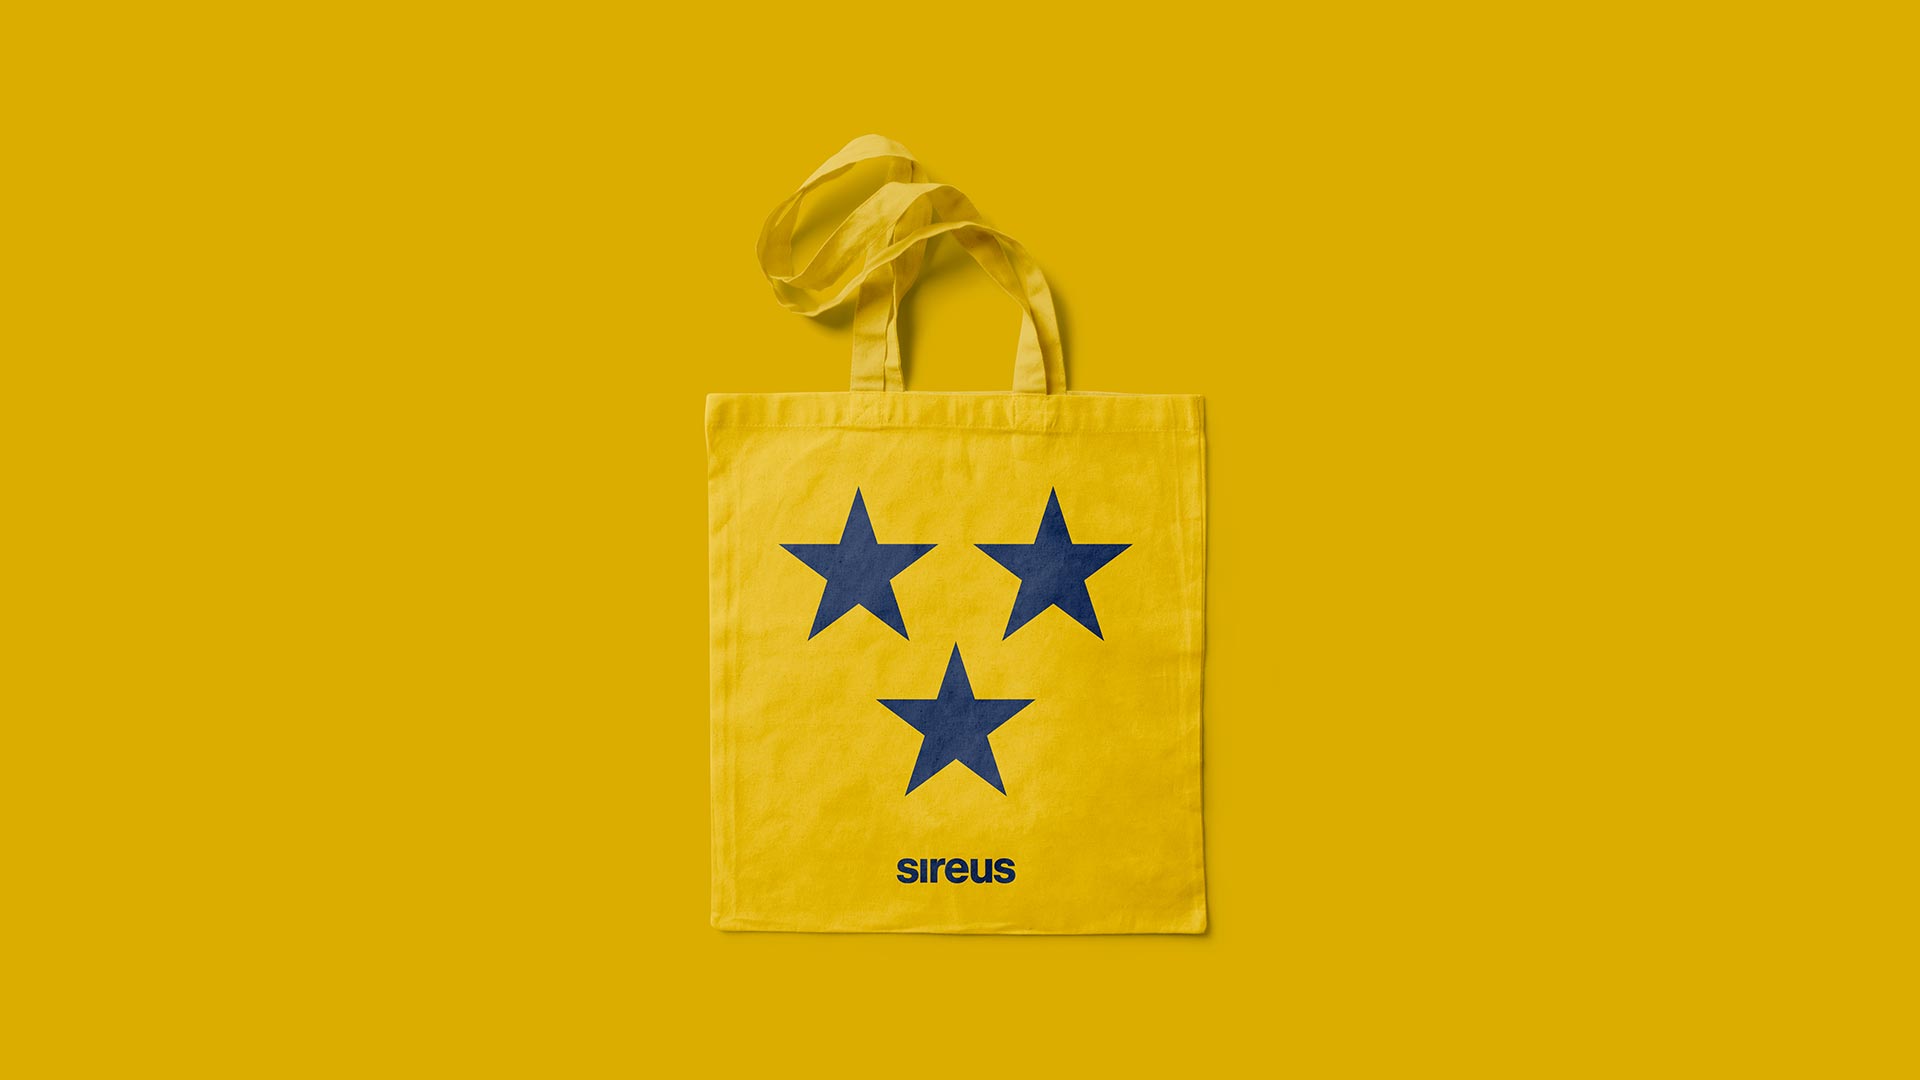 SIREUS Logo on Bag